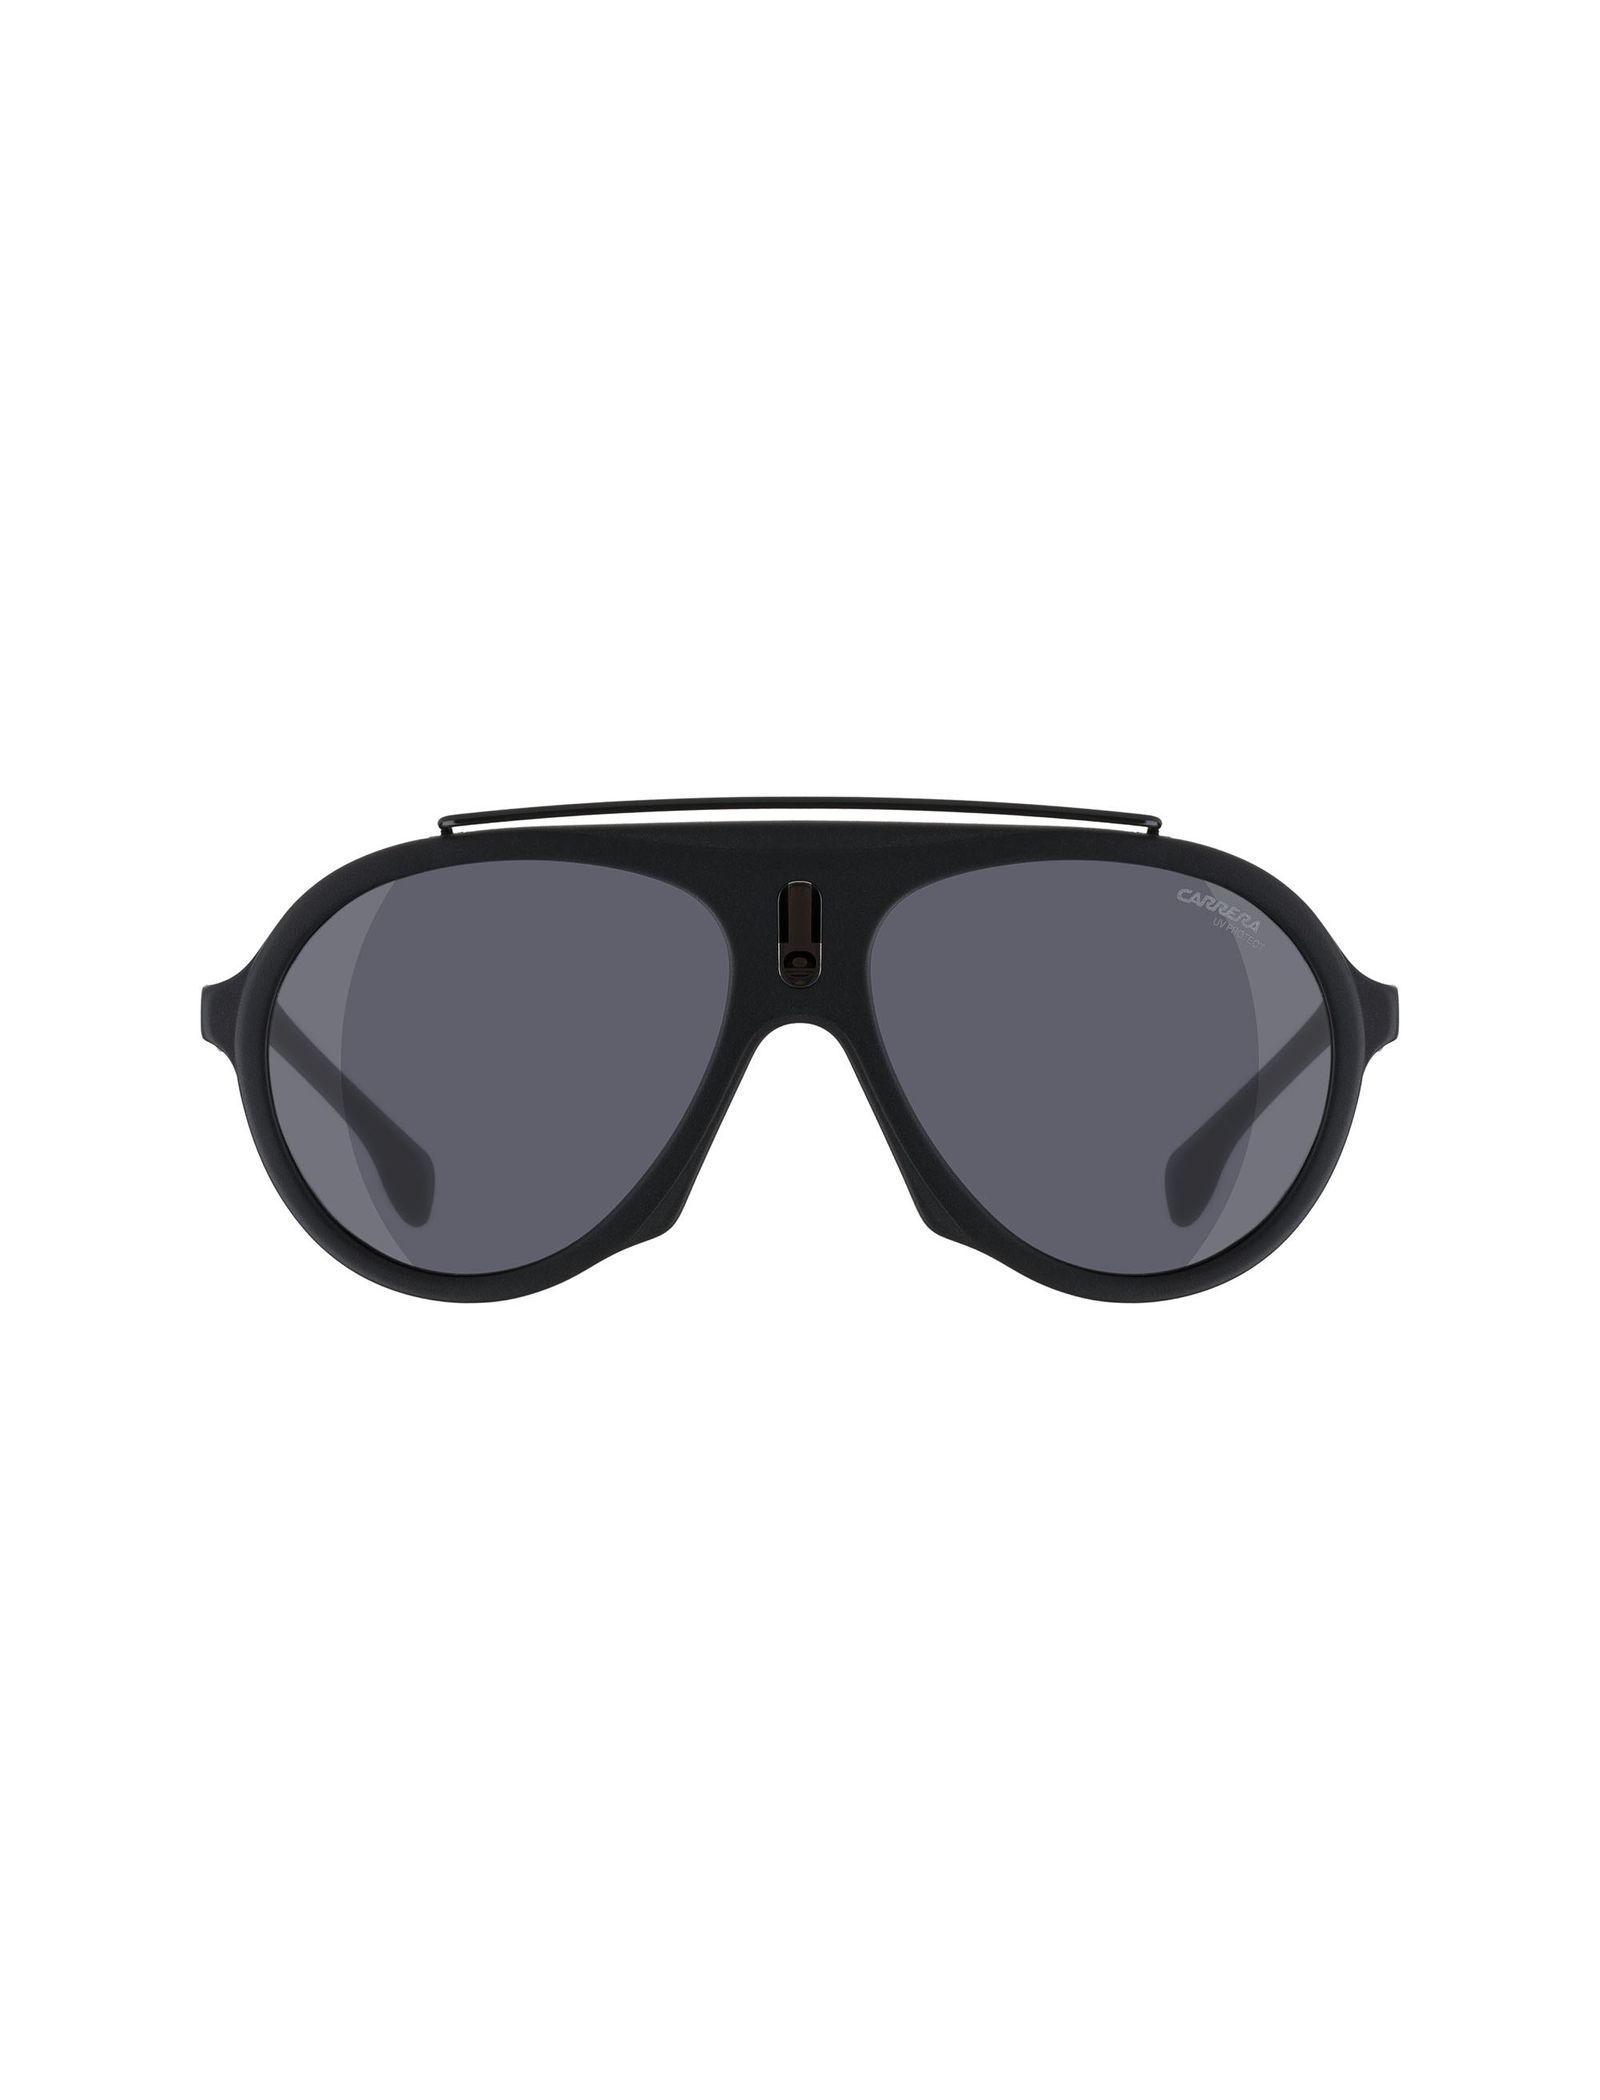 عینک آفتابی خلبانی بزرگسال - کاررا - مشکي مات - 2